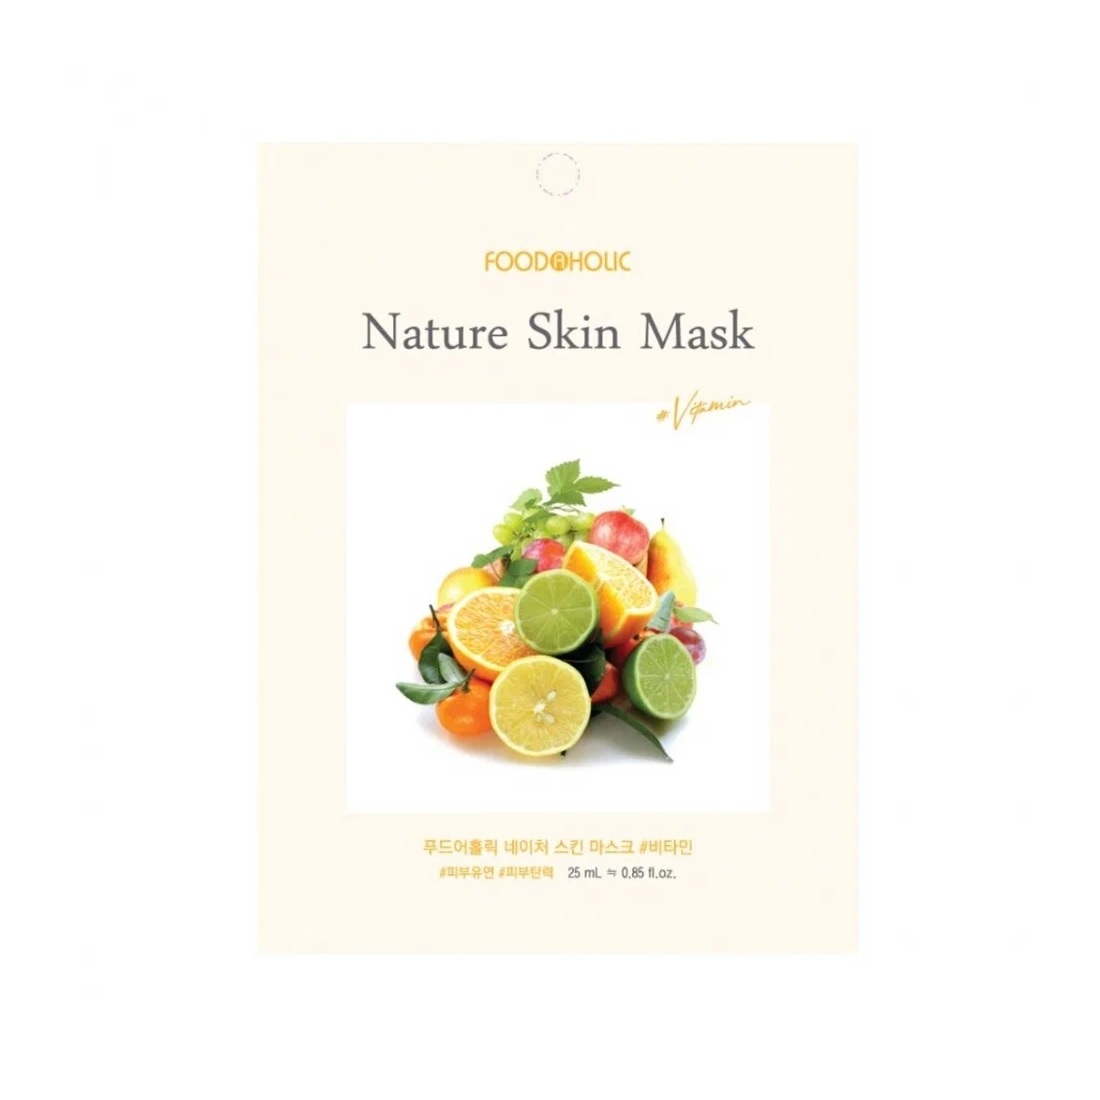 FOODAHOLIC, Тканевая маска для лица с витаминами Nature Skin Mask, 25 гр.